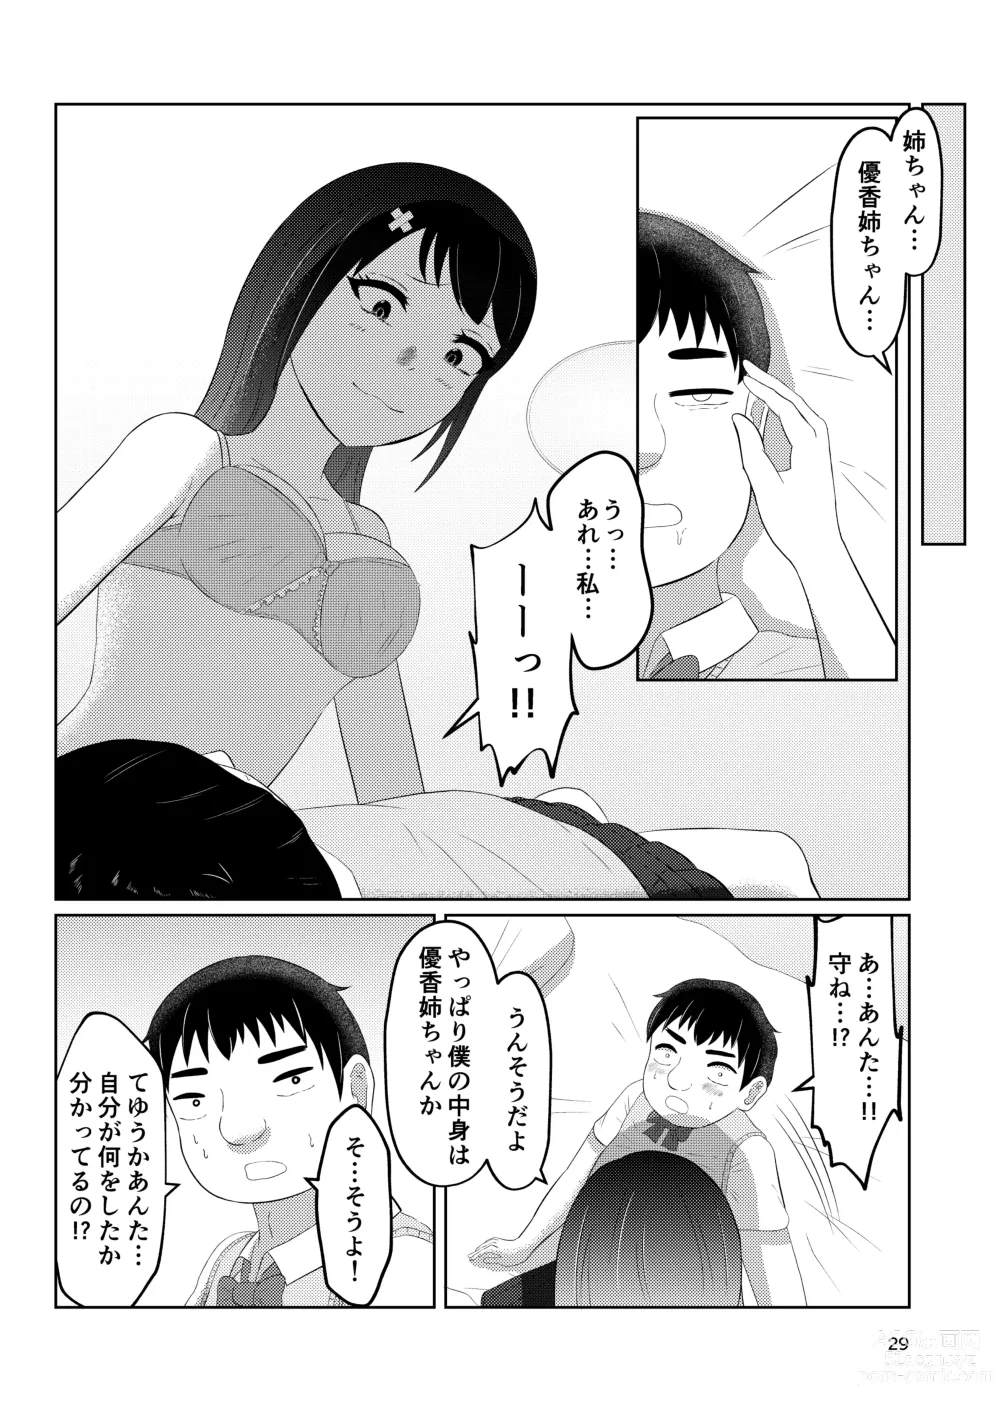 Page 29 of doujinshi Osananajimi no Fuuki Iinchou  wa Boku ni Somaru